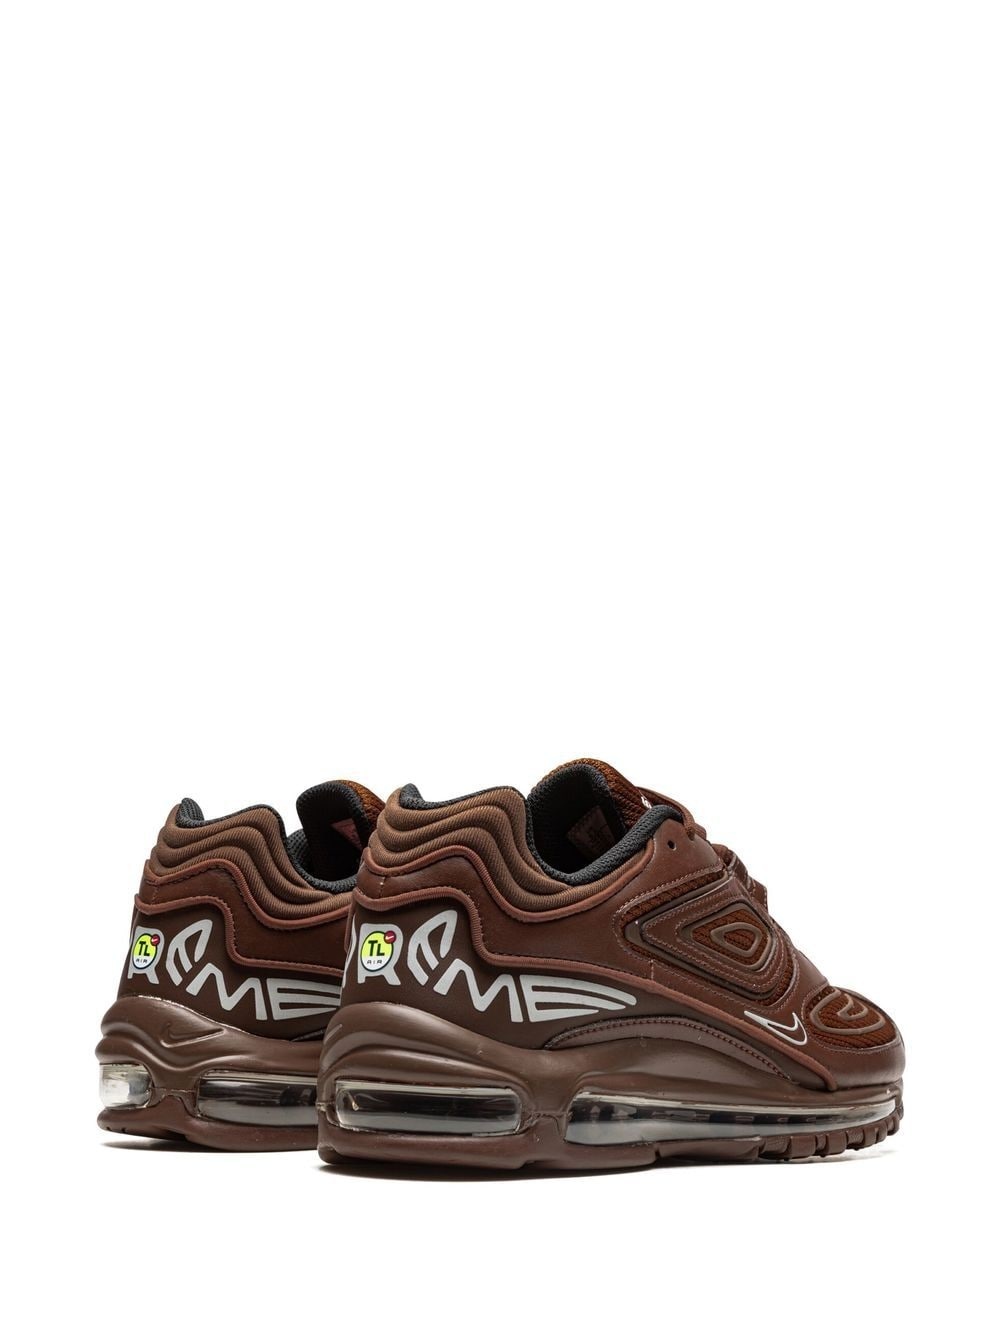 x Supreme Air Max 98 TL "Brown" sneakers - 3